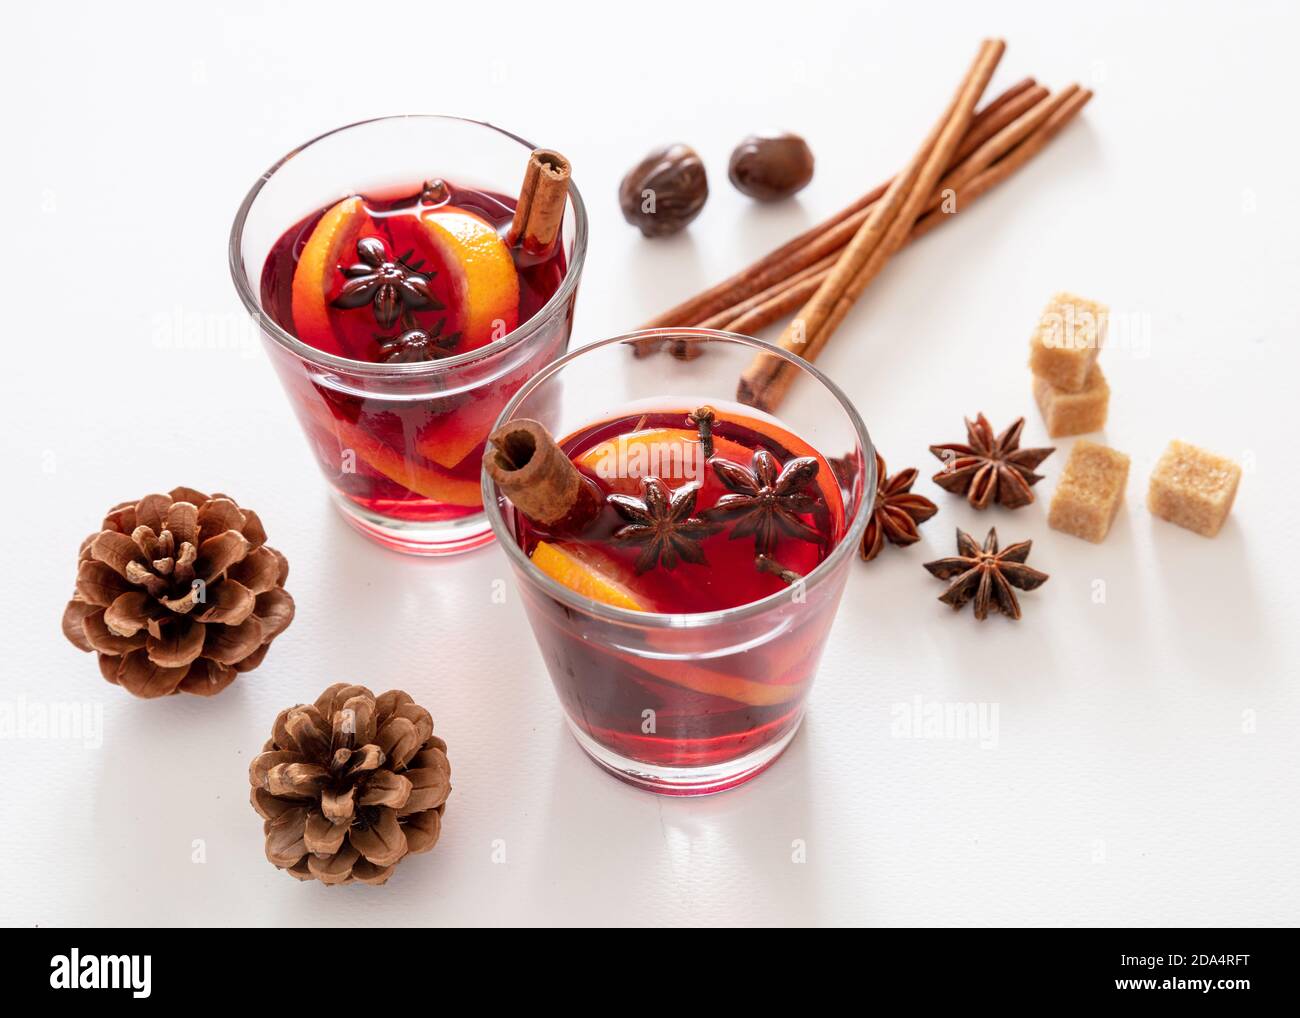 Glühwein, Winter Weihnachten wärmende Alkoholgetränk, zwei Glas Tassen, Zutaten Orange und Gewürze auf weißem Hintergrund, Nahaufnahme. Stockfoto